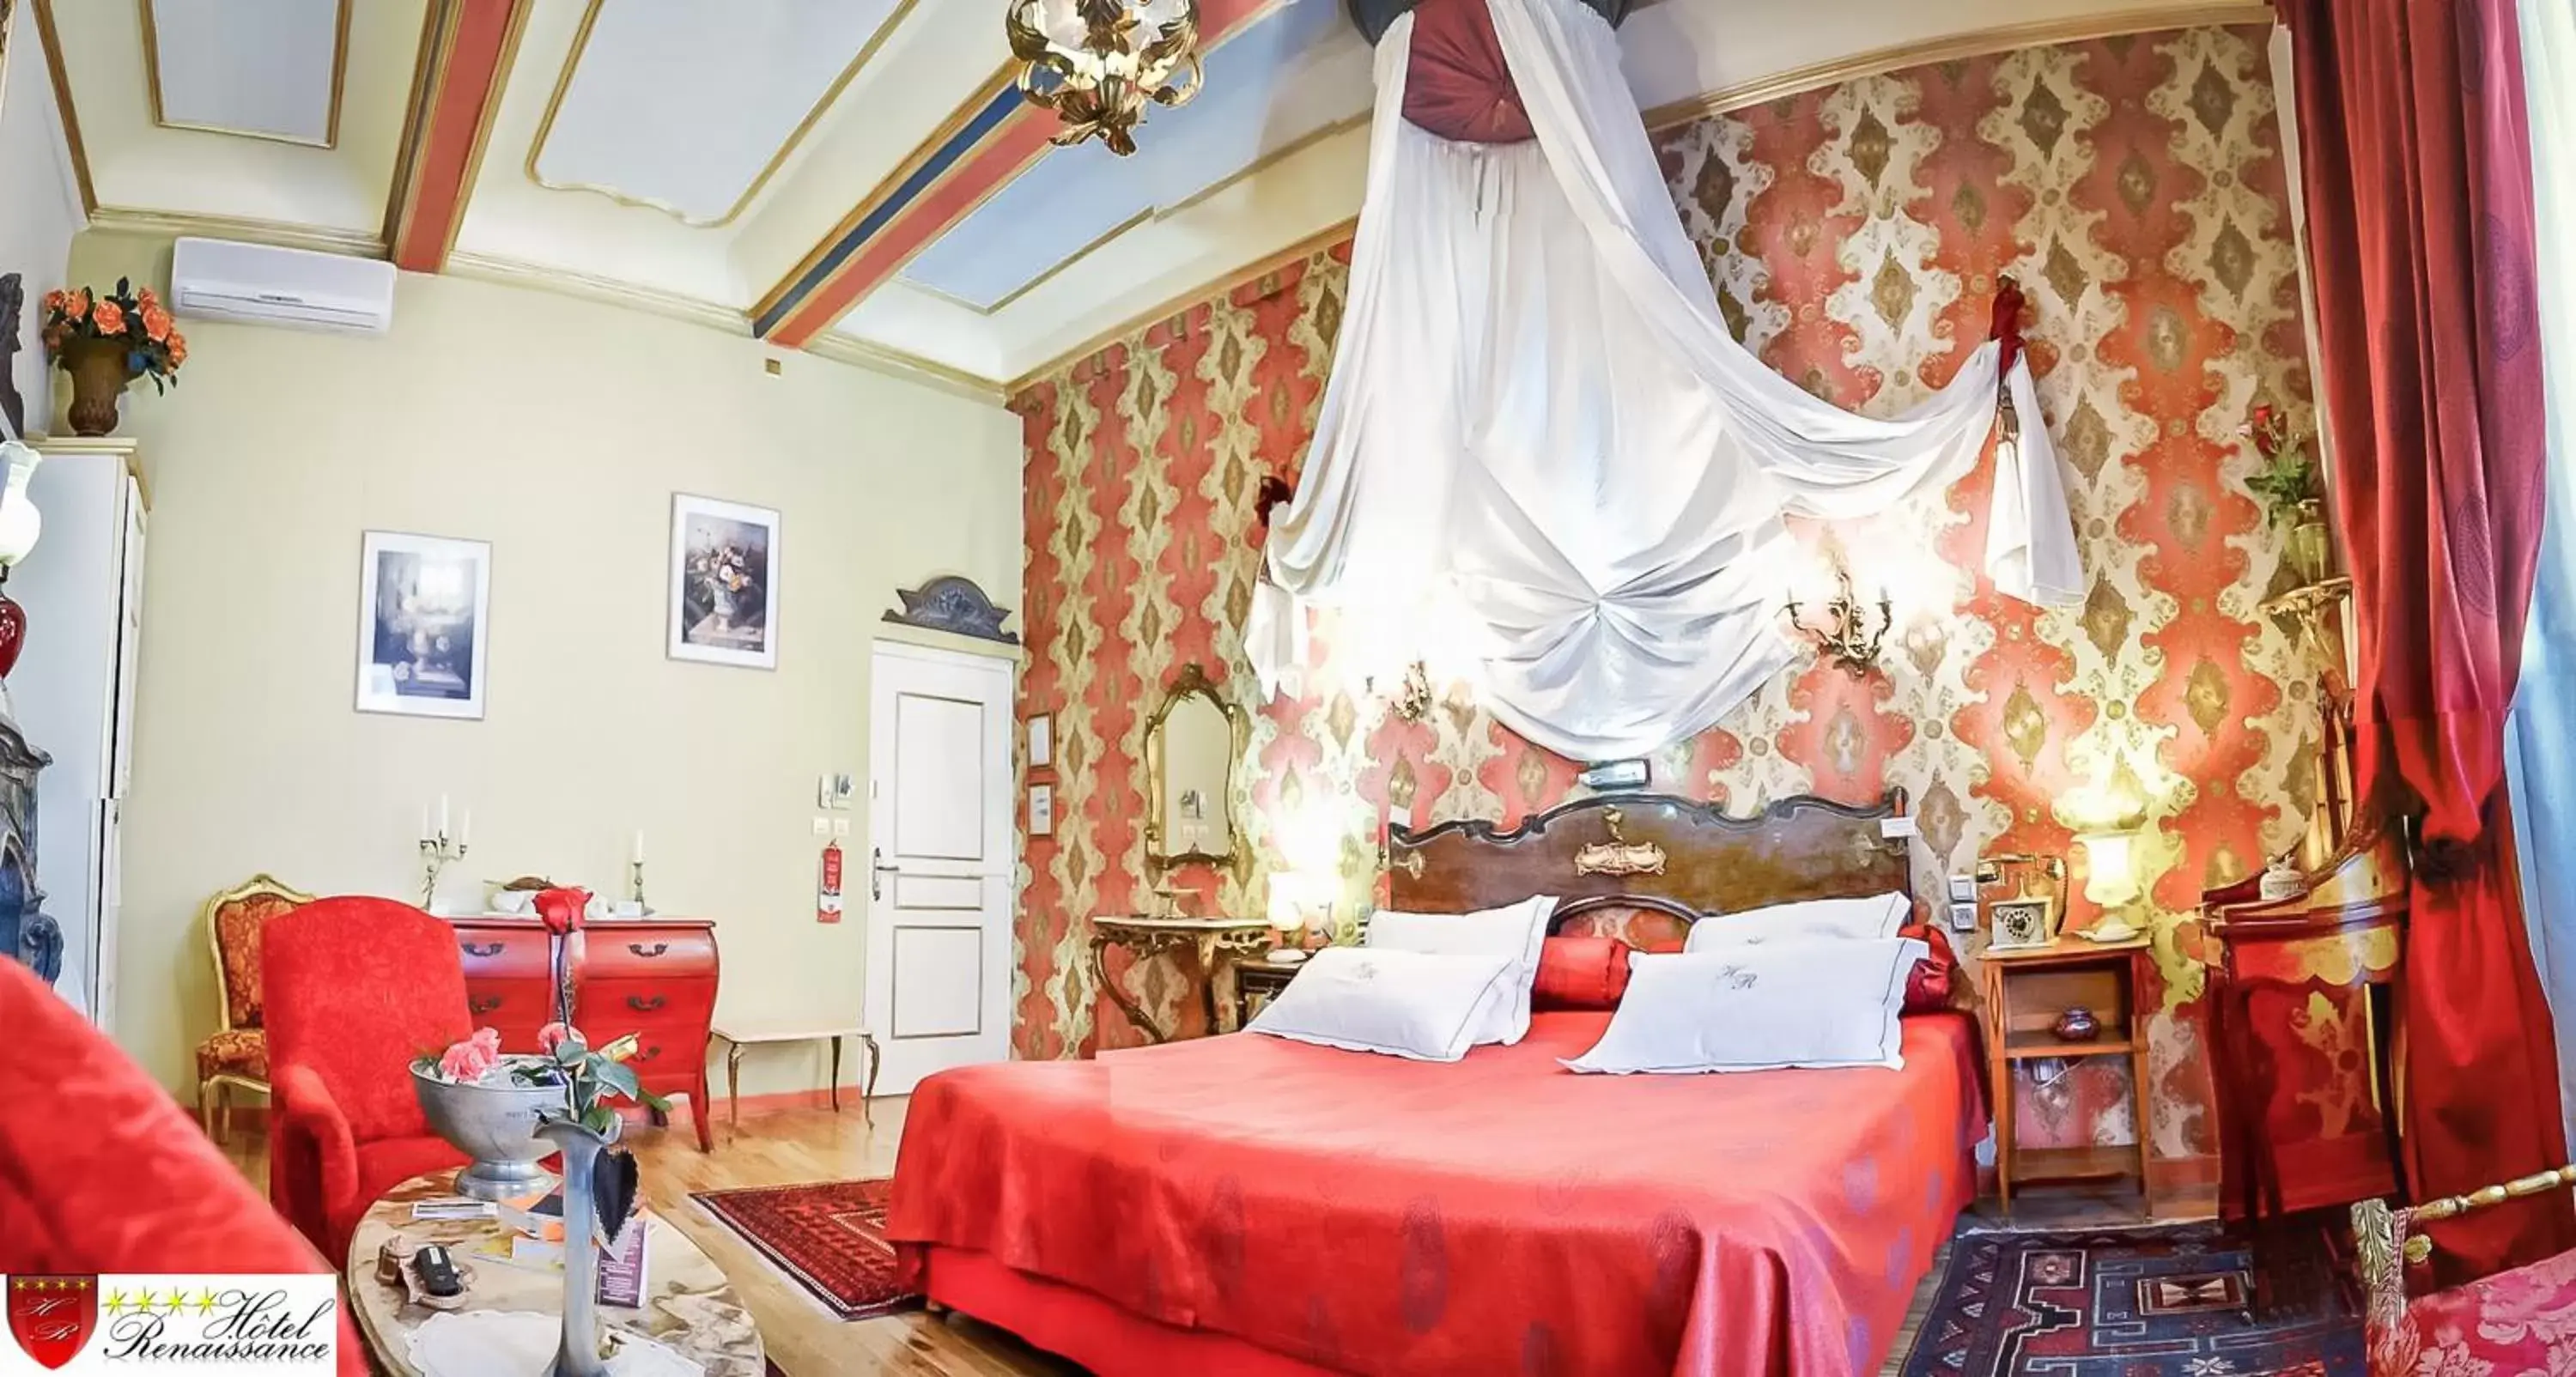 Bedroom in Hôtel Renaissance